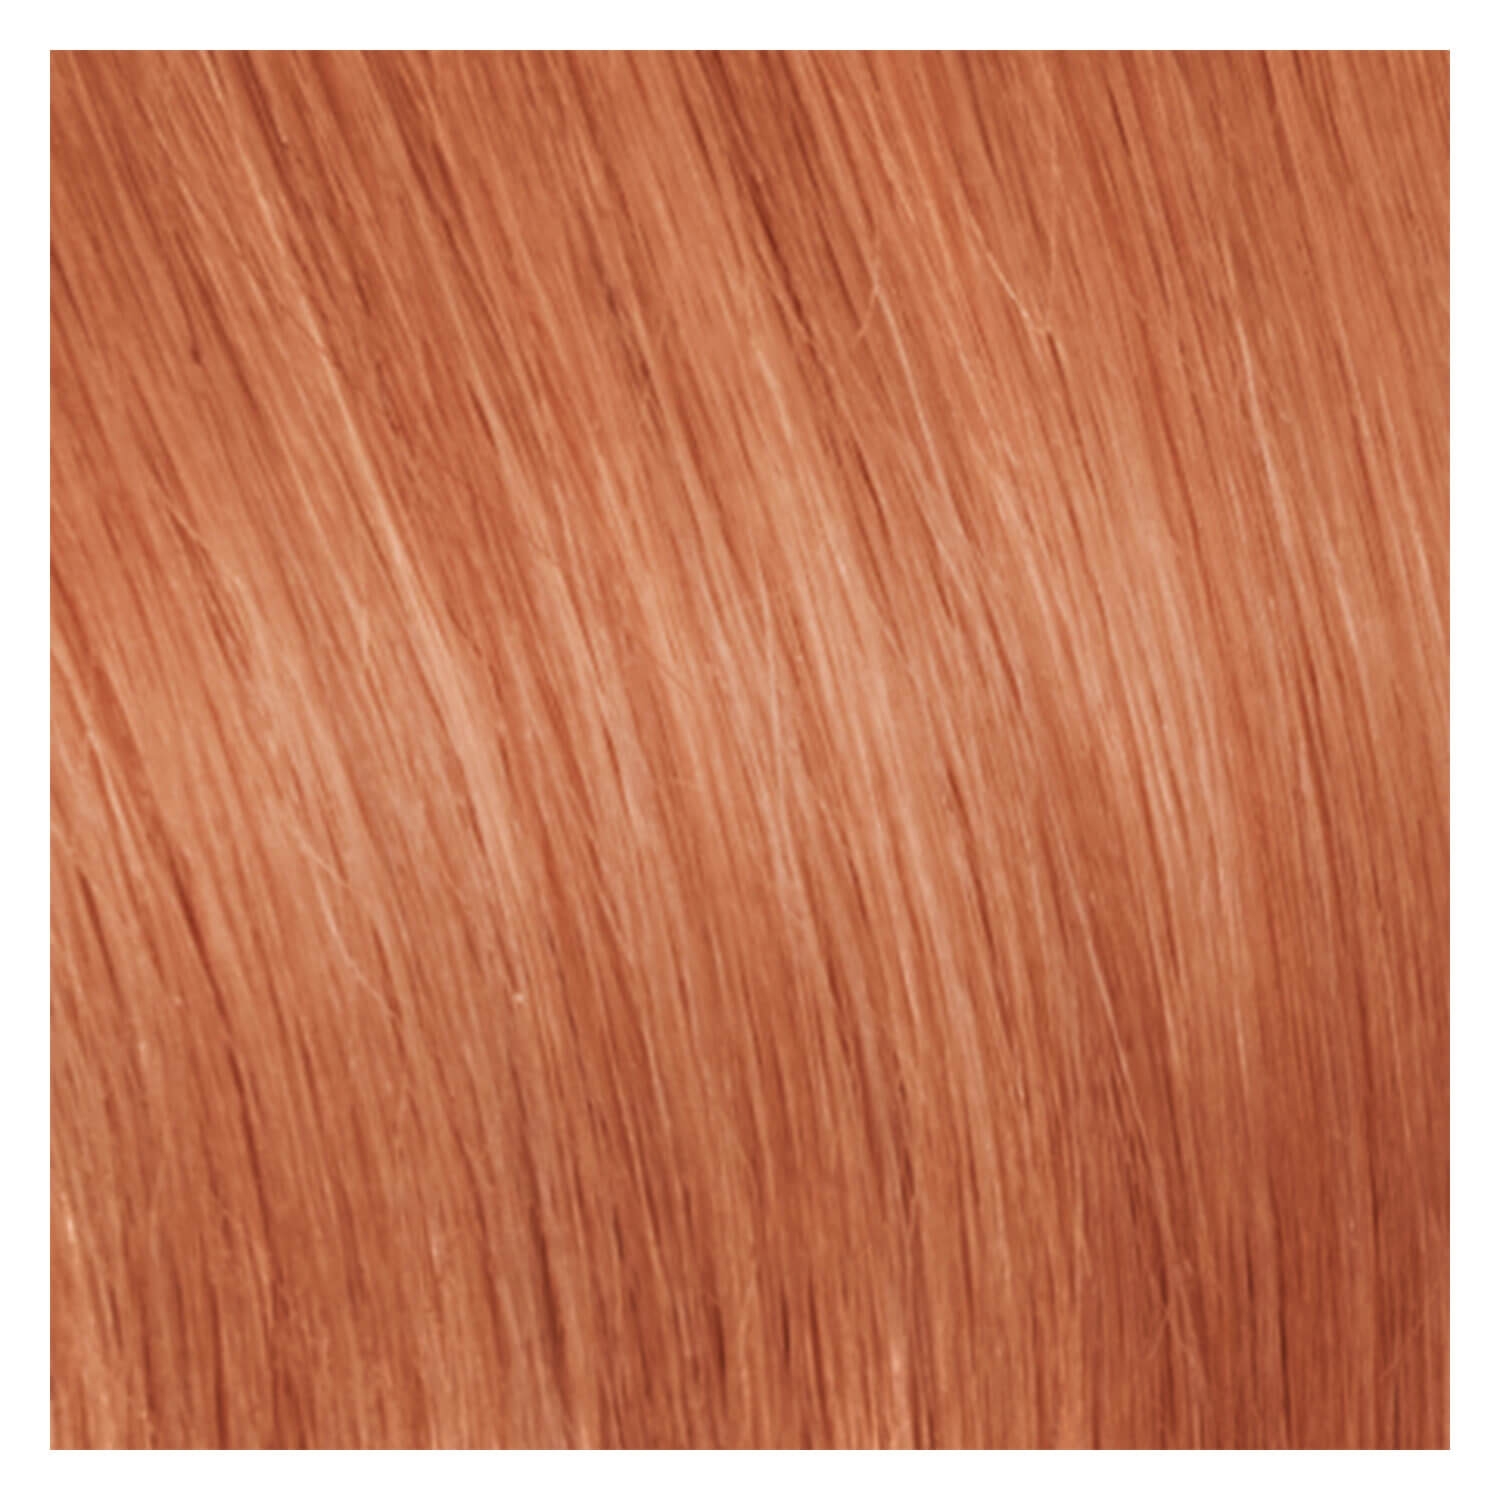 Produktbild von SHE Tape In-System Hair Extensions Straight - 21 Blond Orange 55/60cm